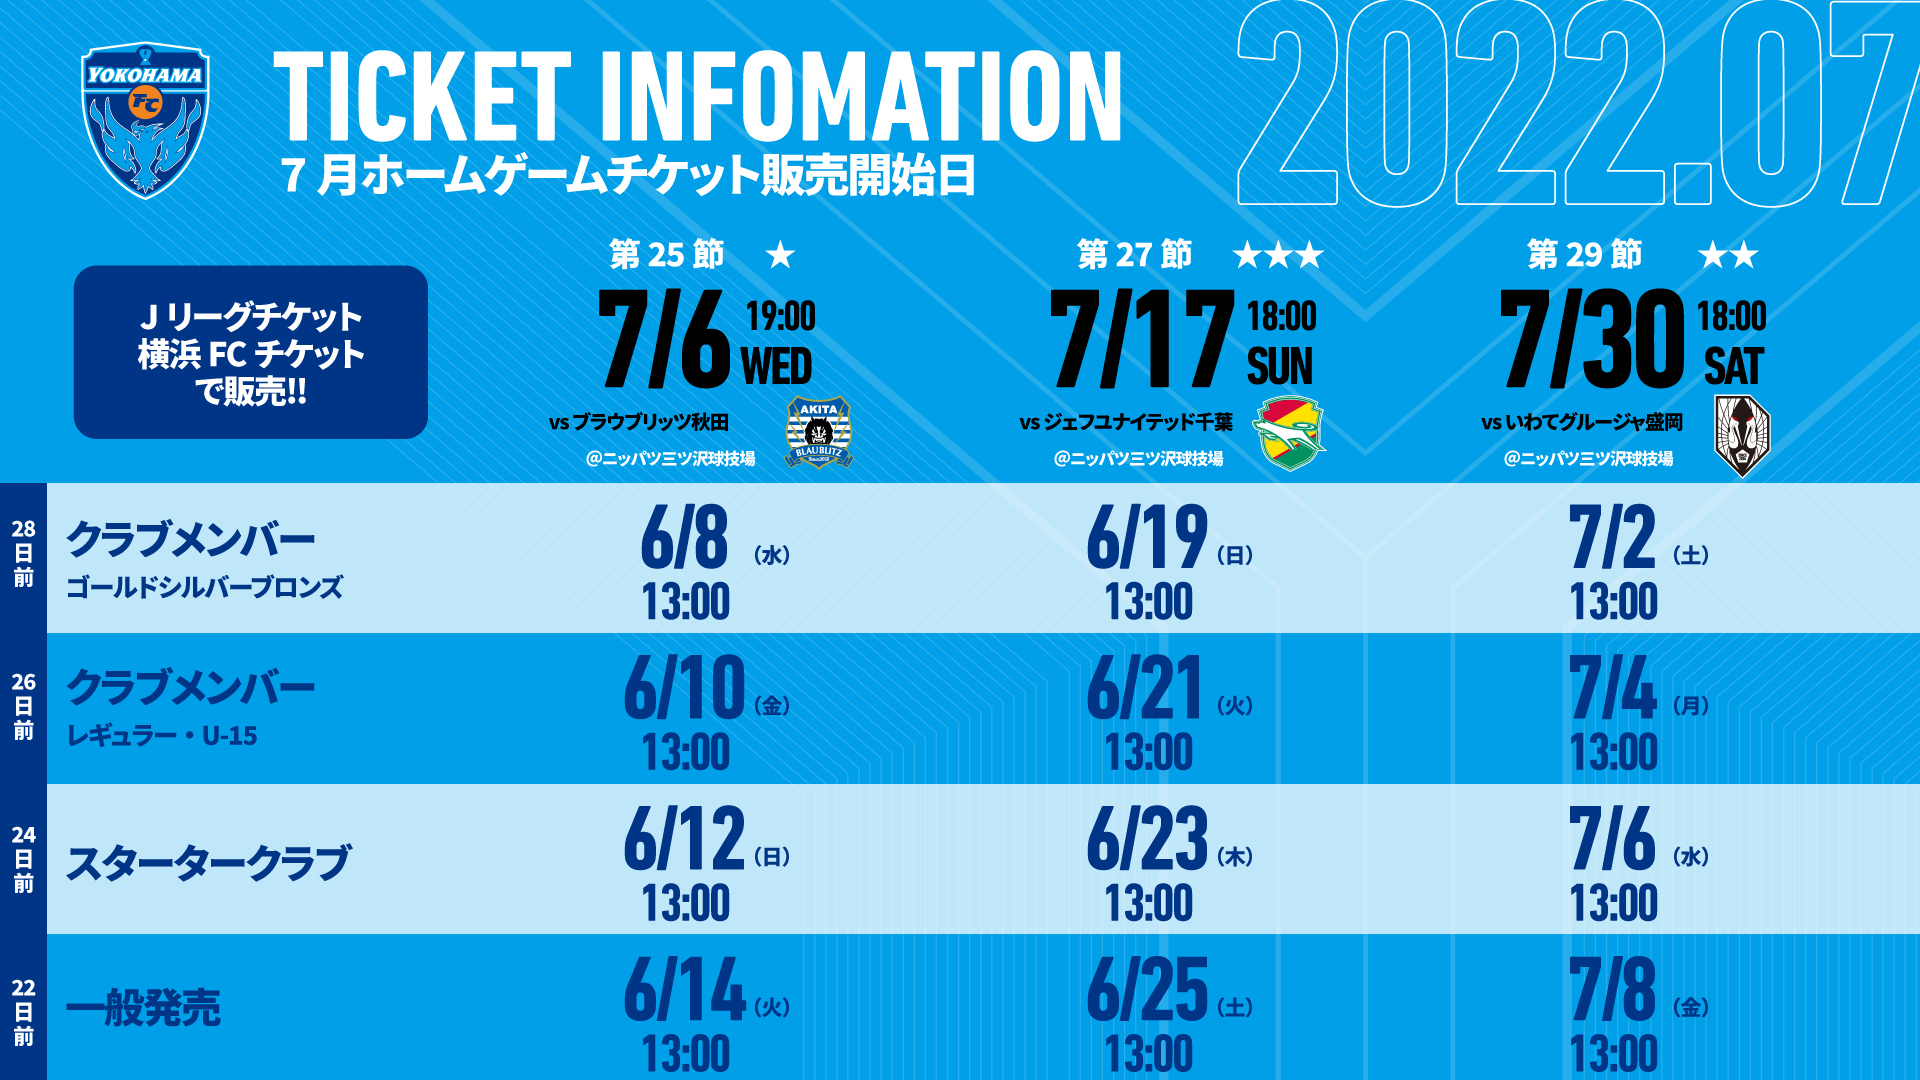 7月開催ホームゲームチケットに関するお知らせ 横浜fcオフィシャルウェブサイト